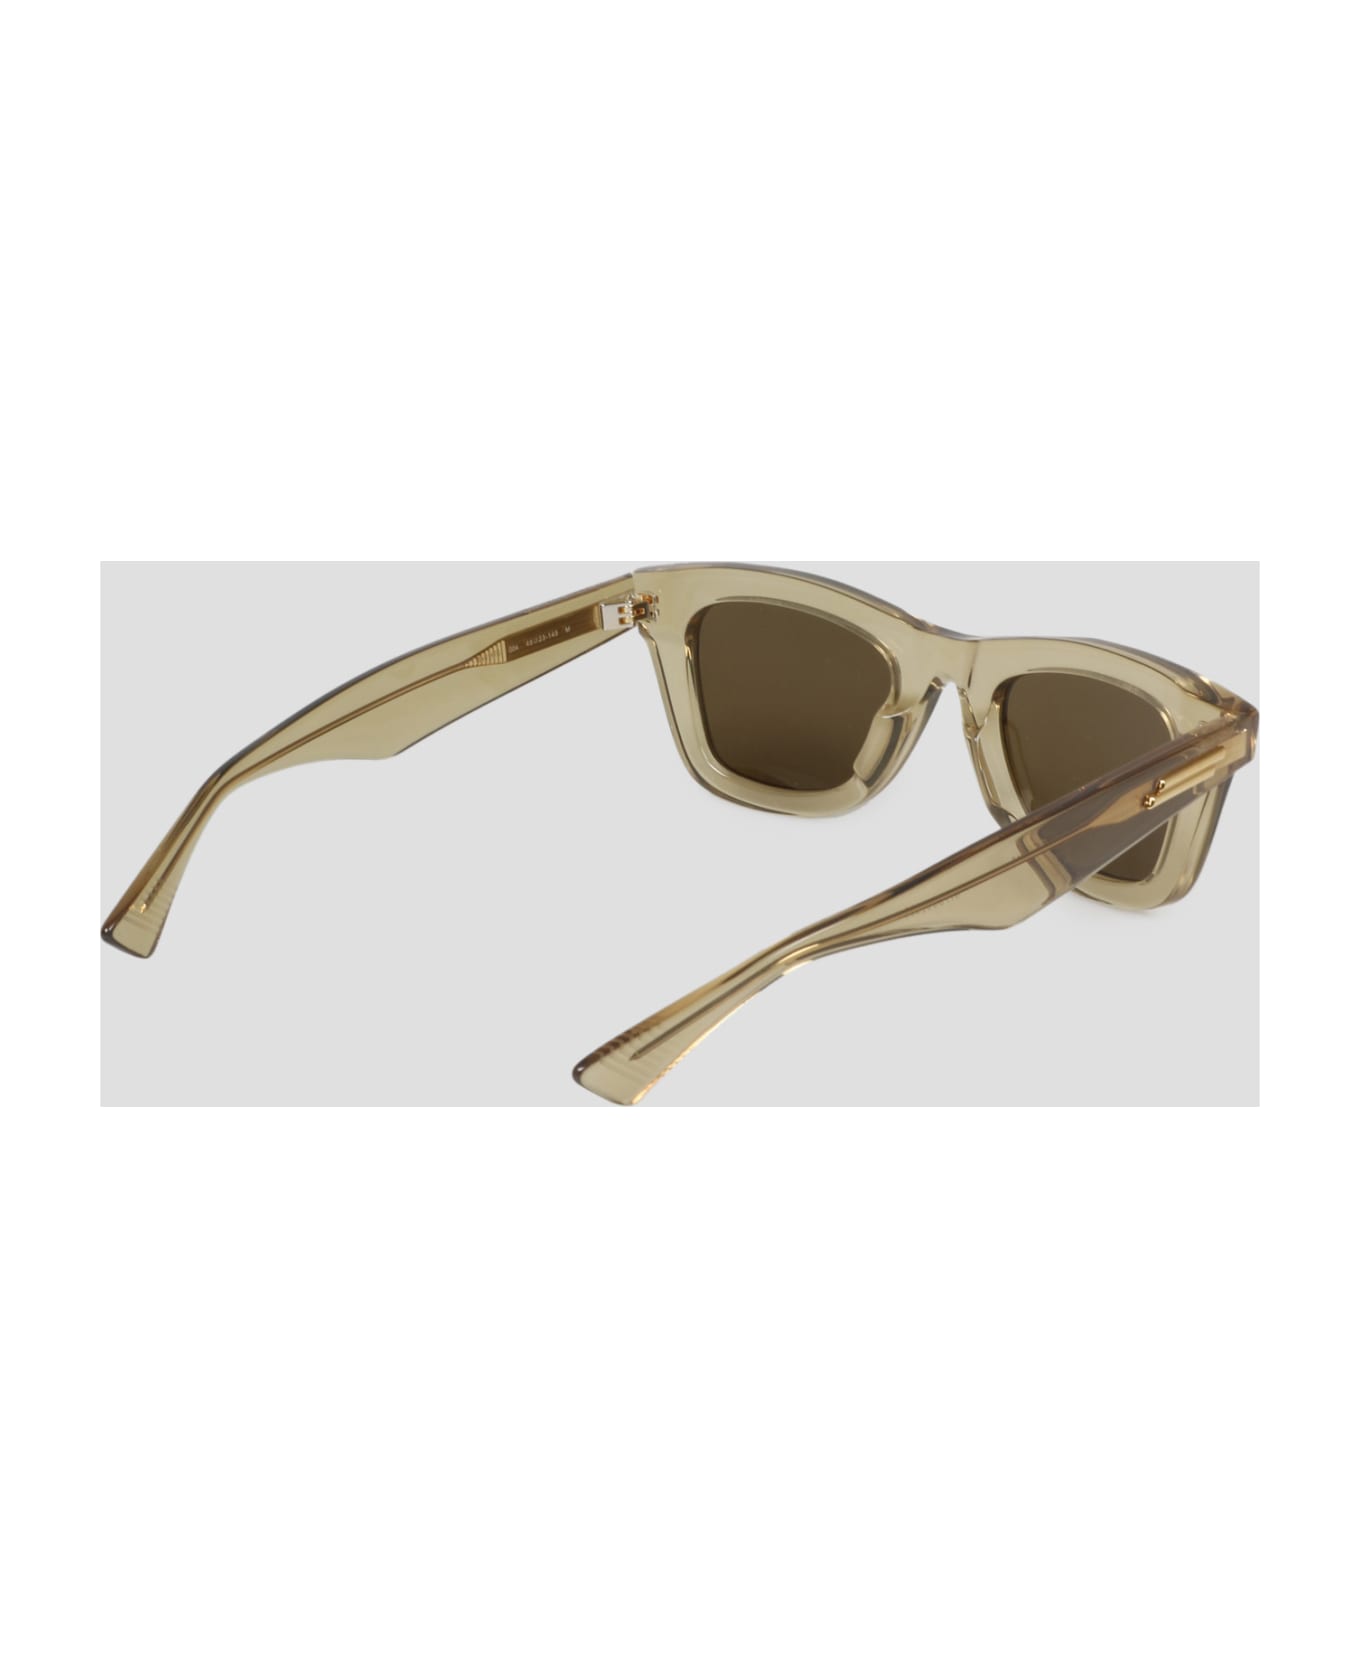 Bottega Veneta Eyewear Classic Sunglasses - Nude & Neutrals